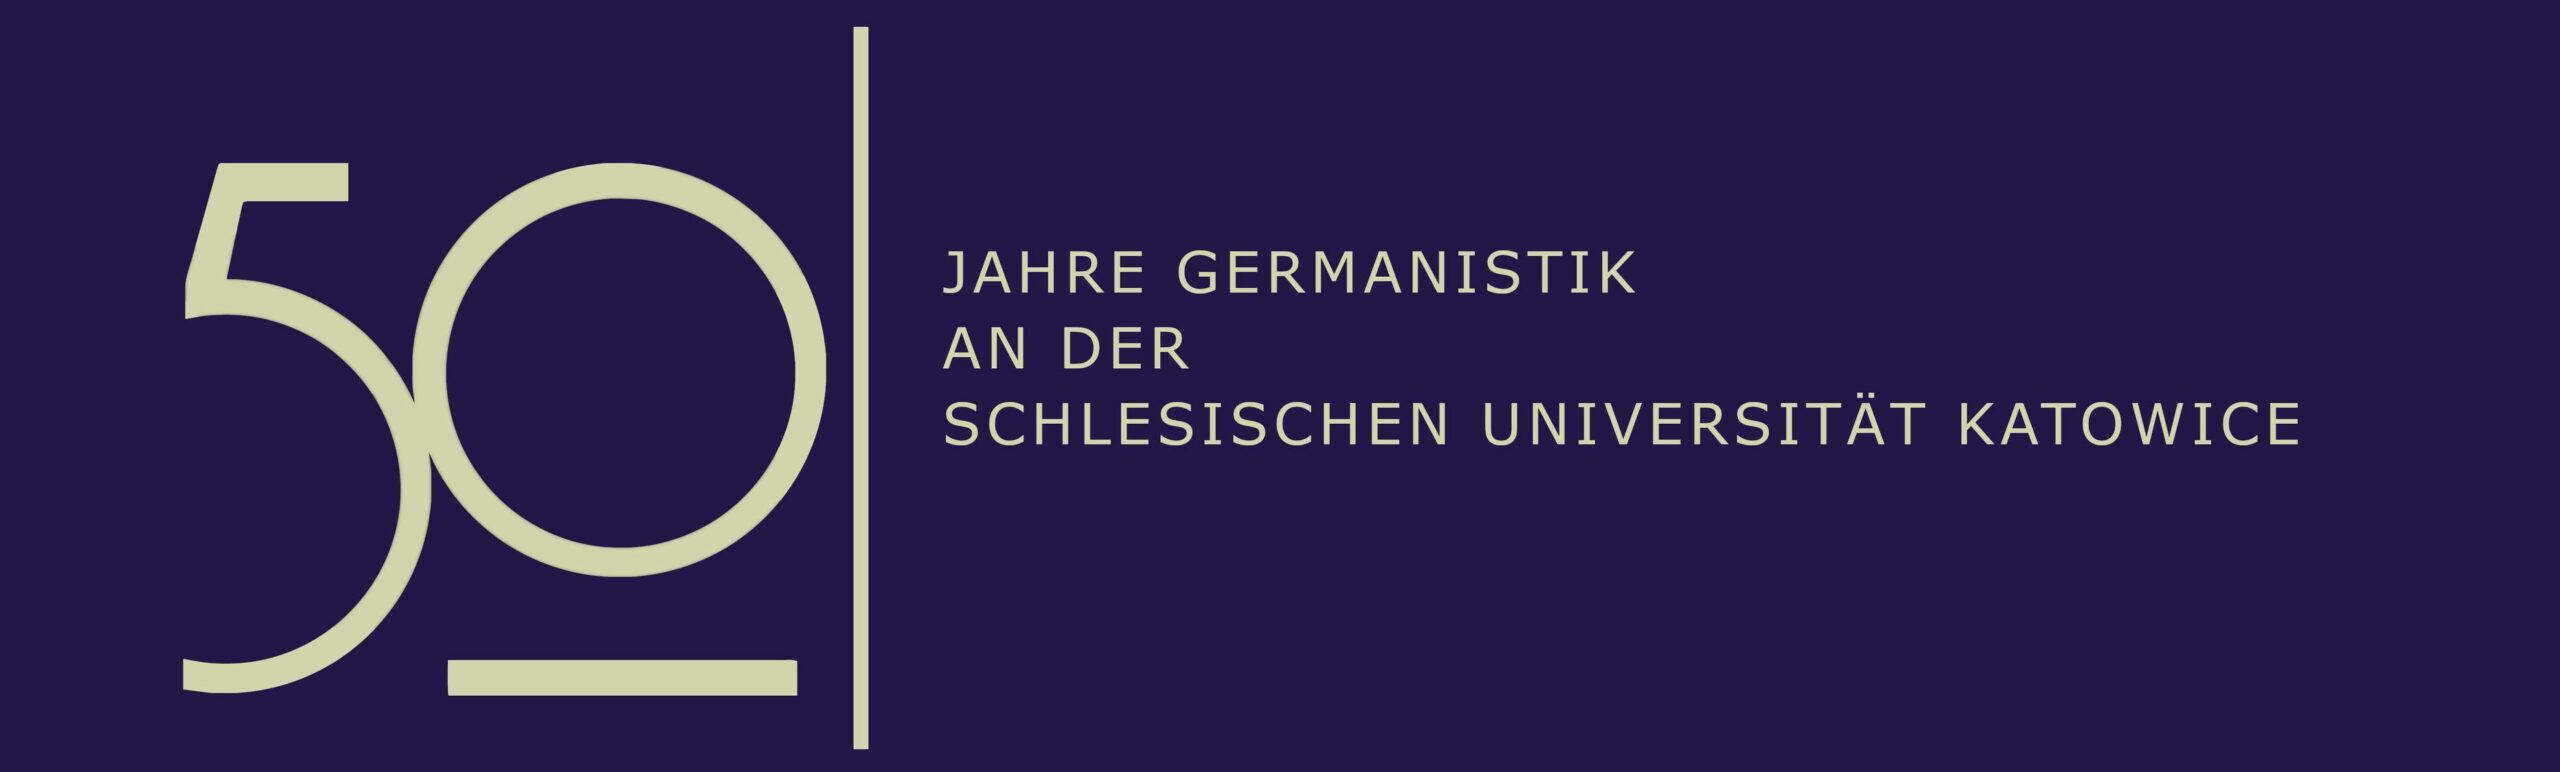 50 jahre germanistik an der schlesischen universitat katowice